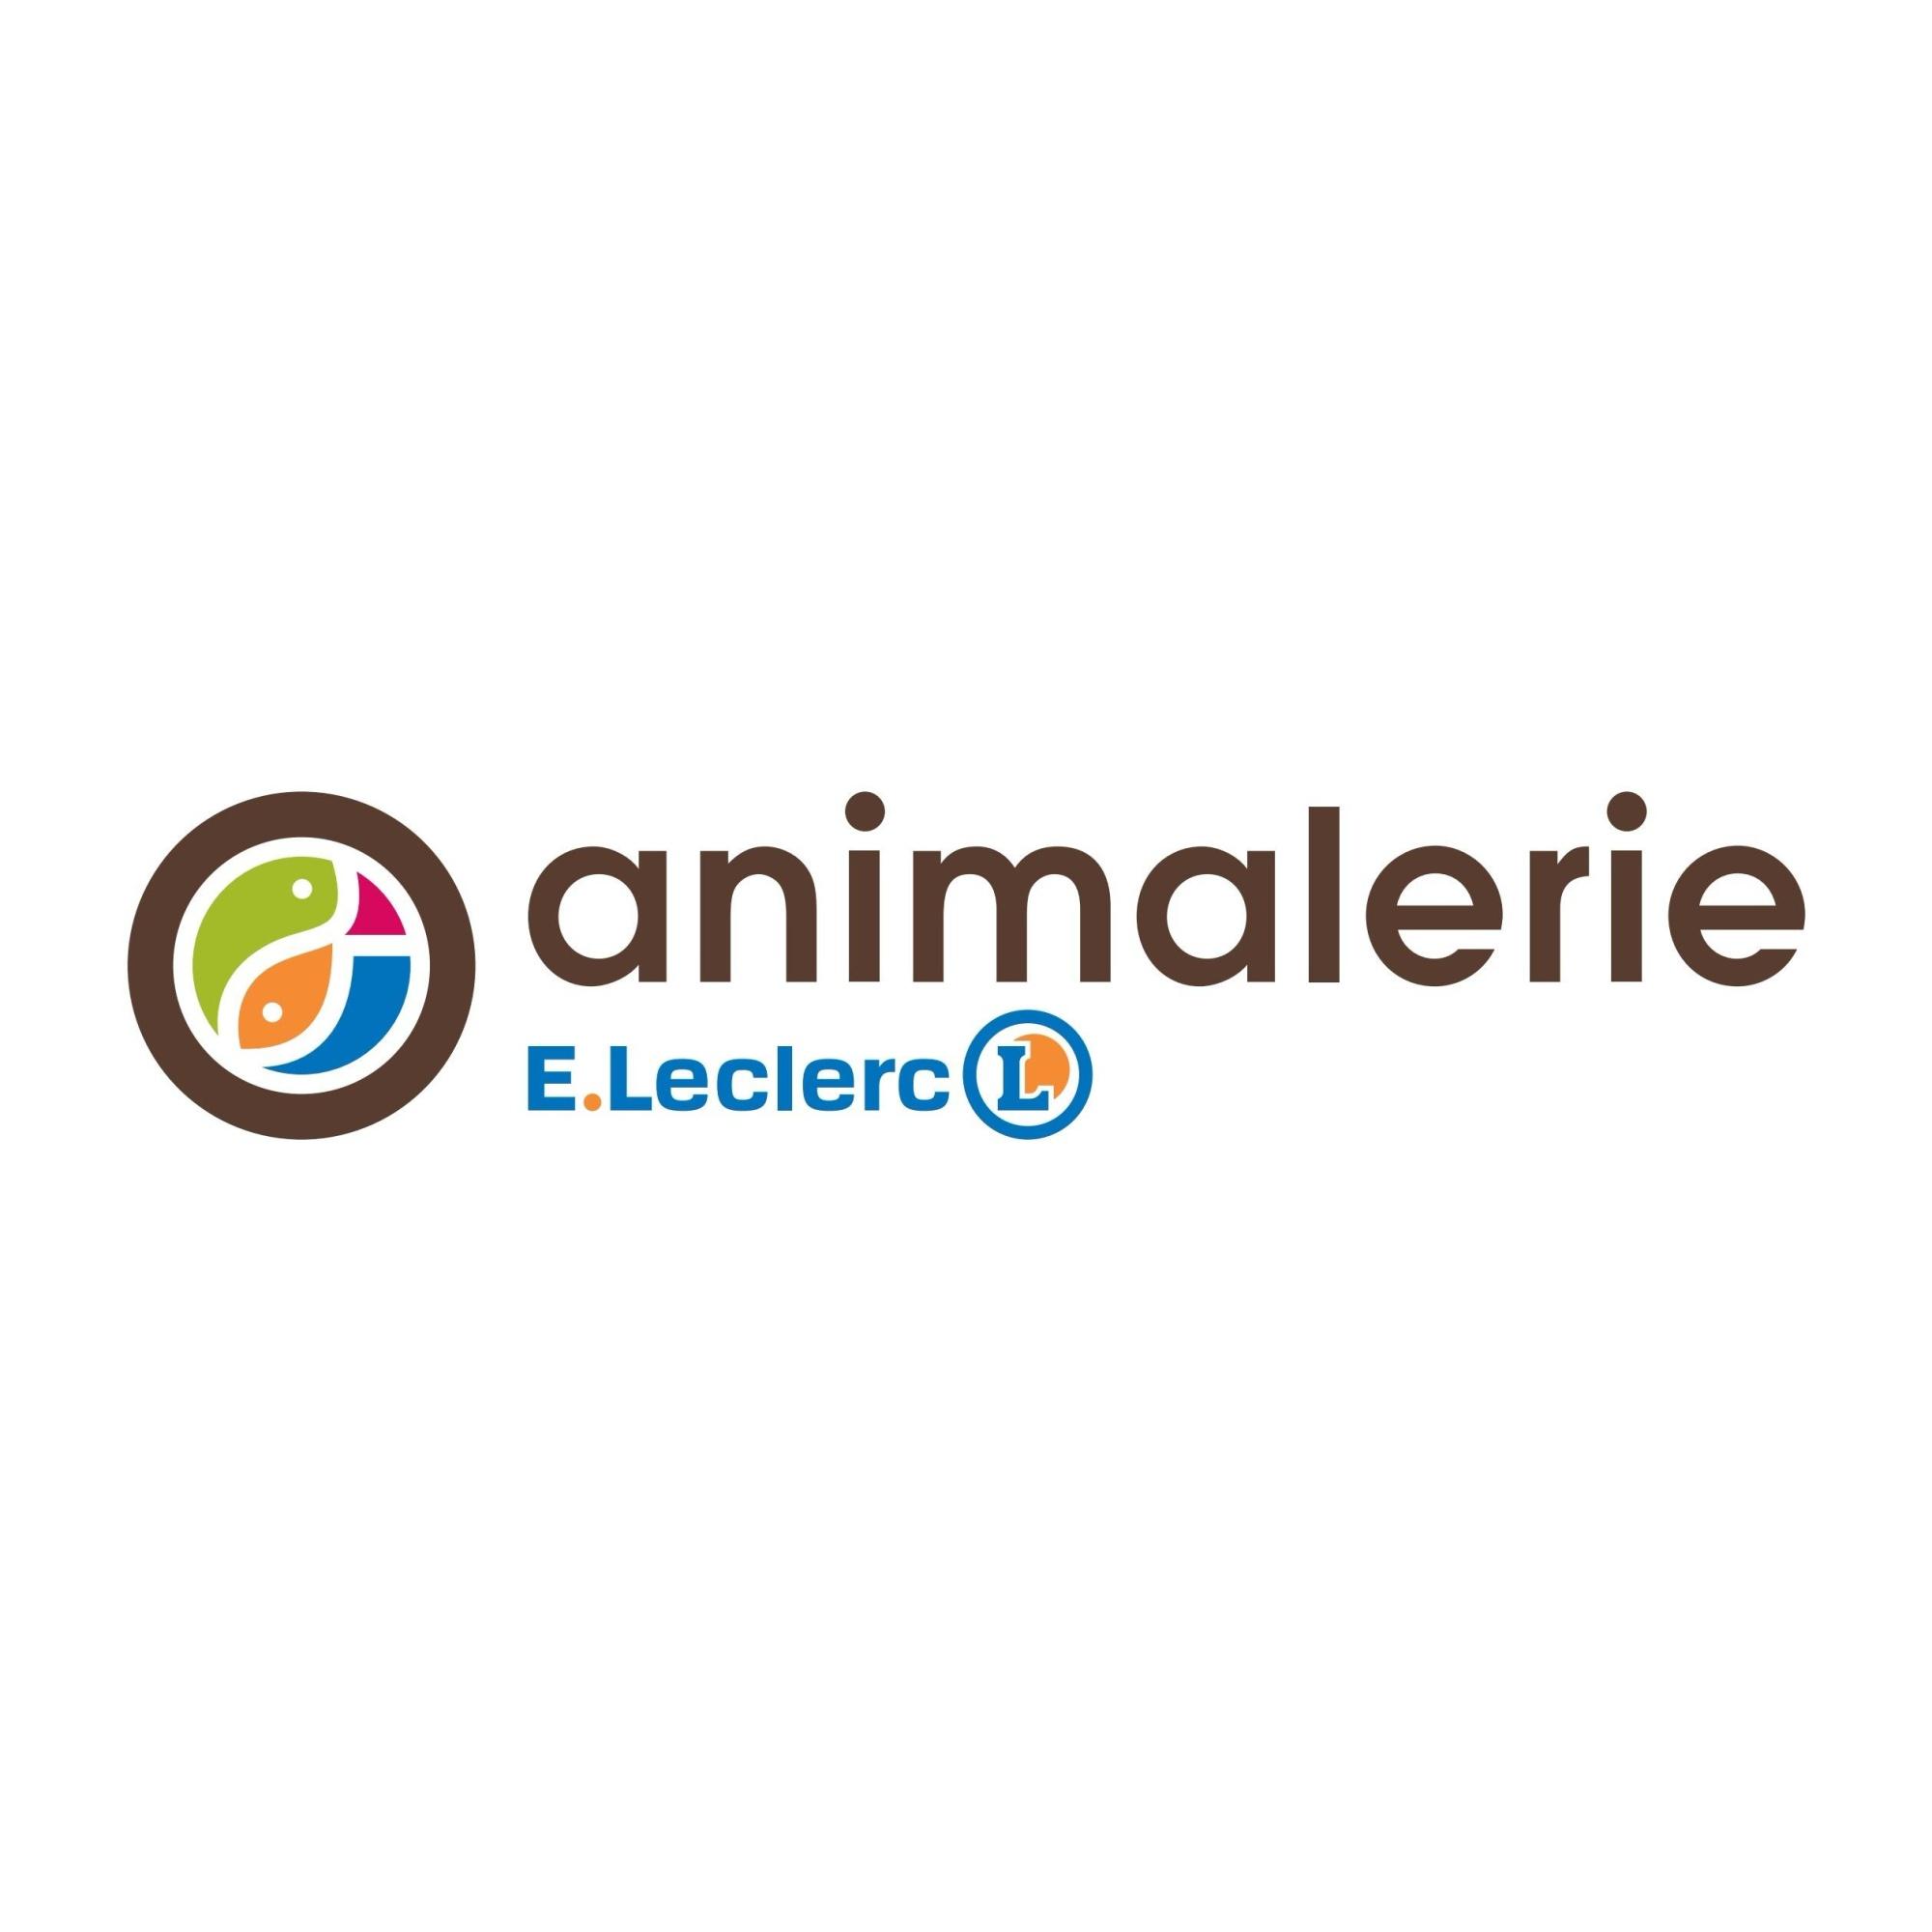 E.leclerc Animalerie Saint Etienne Du Rouvray